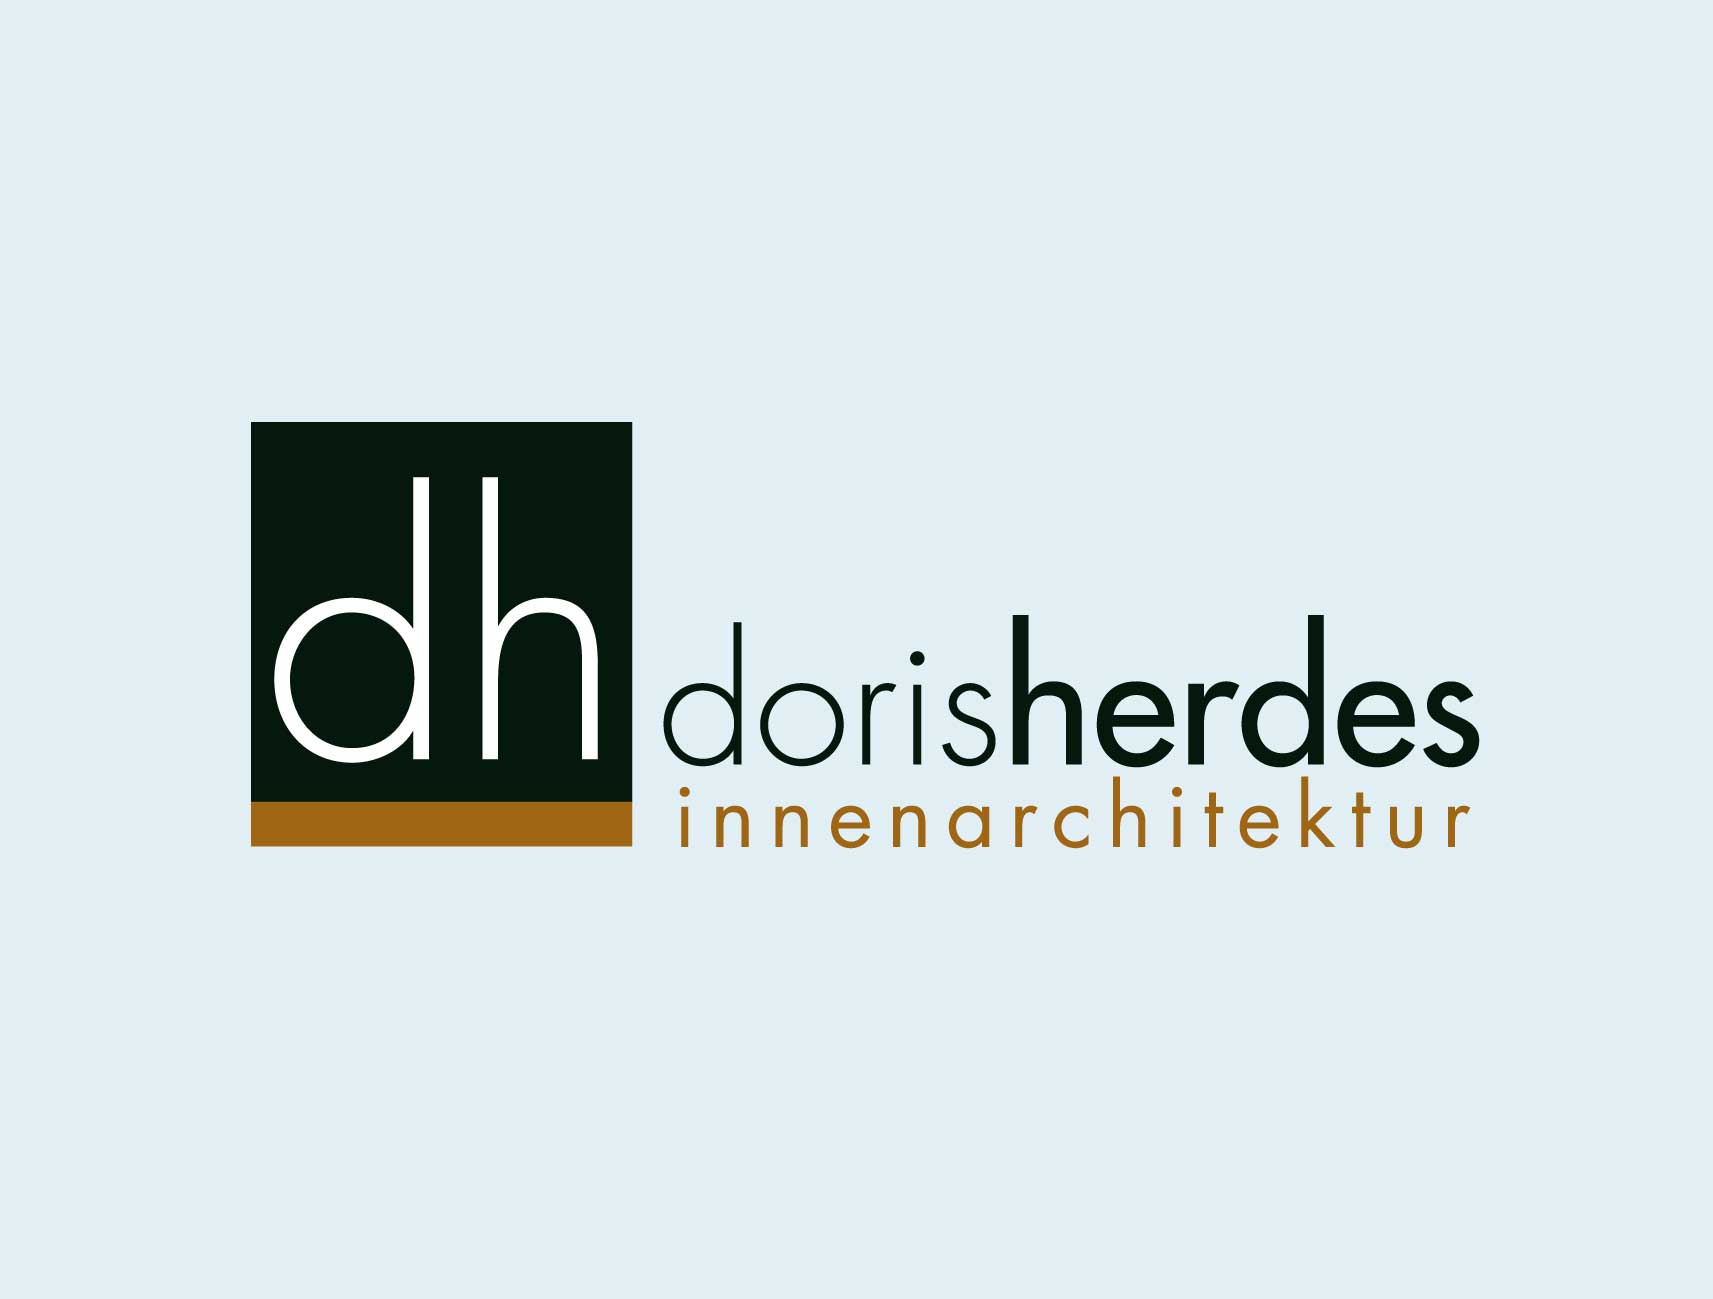 Doris Herdes